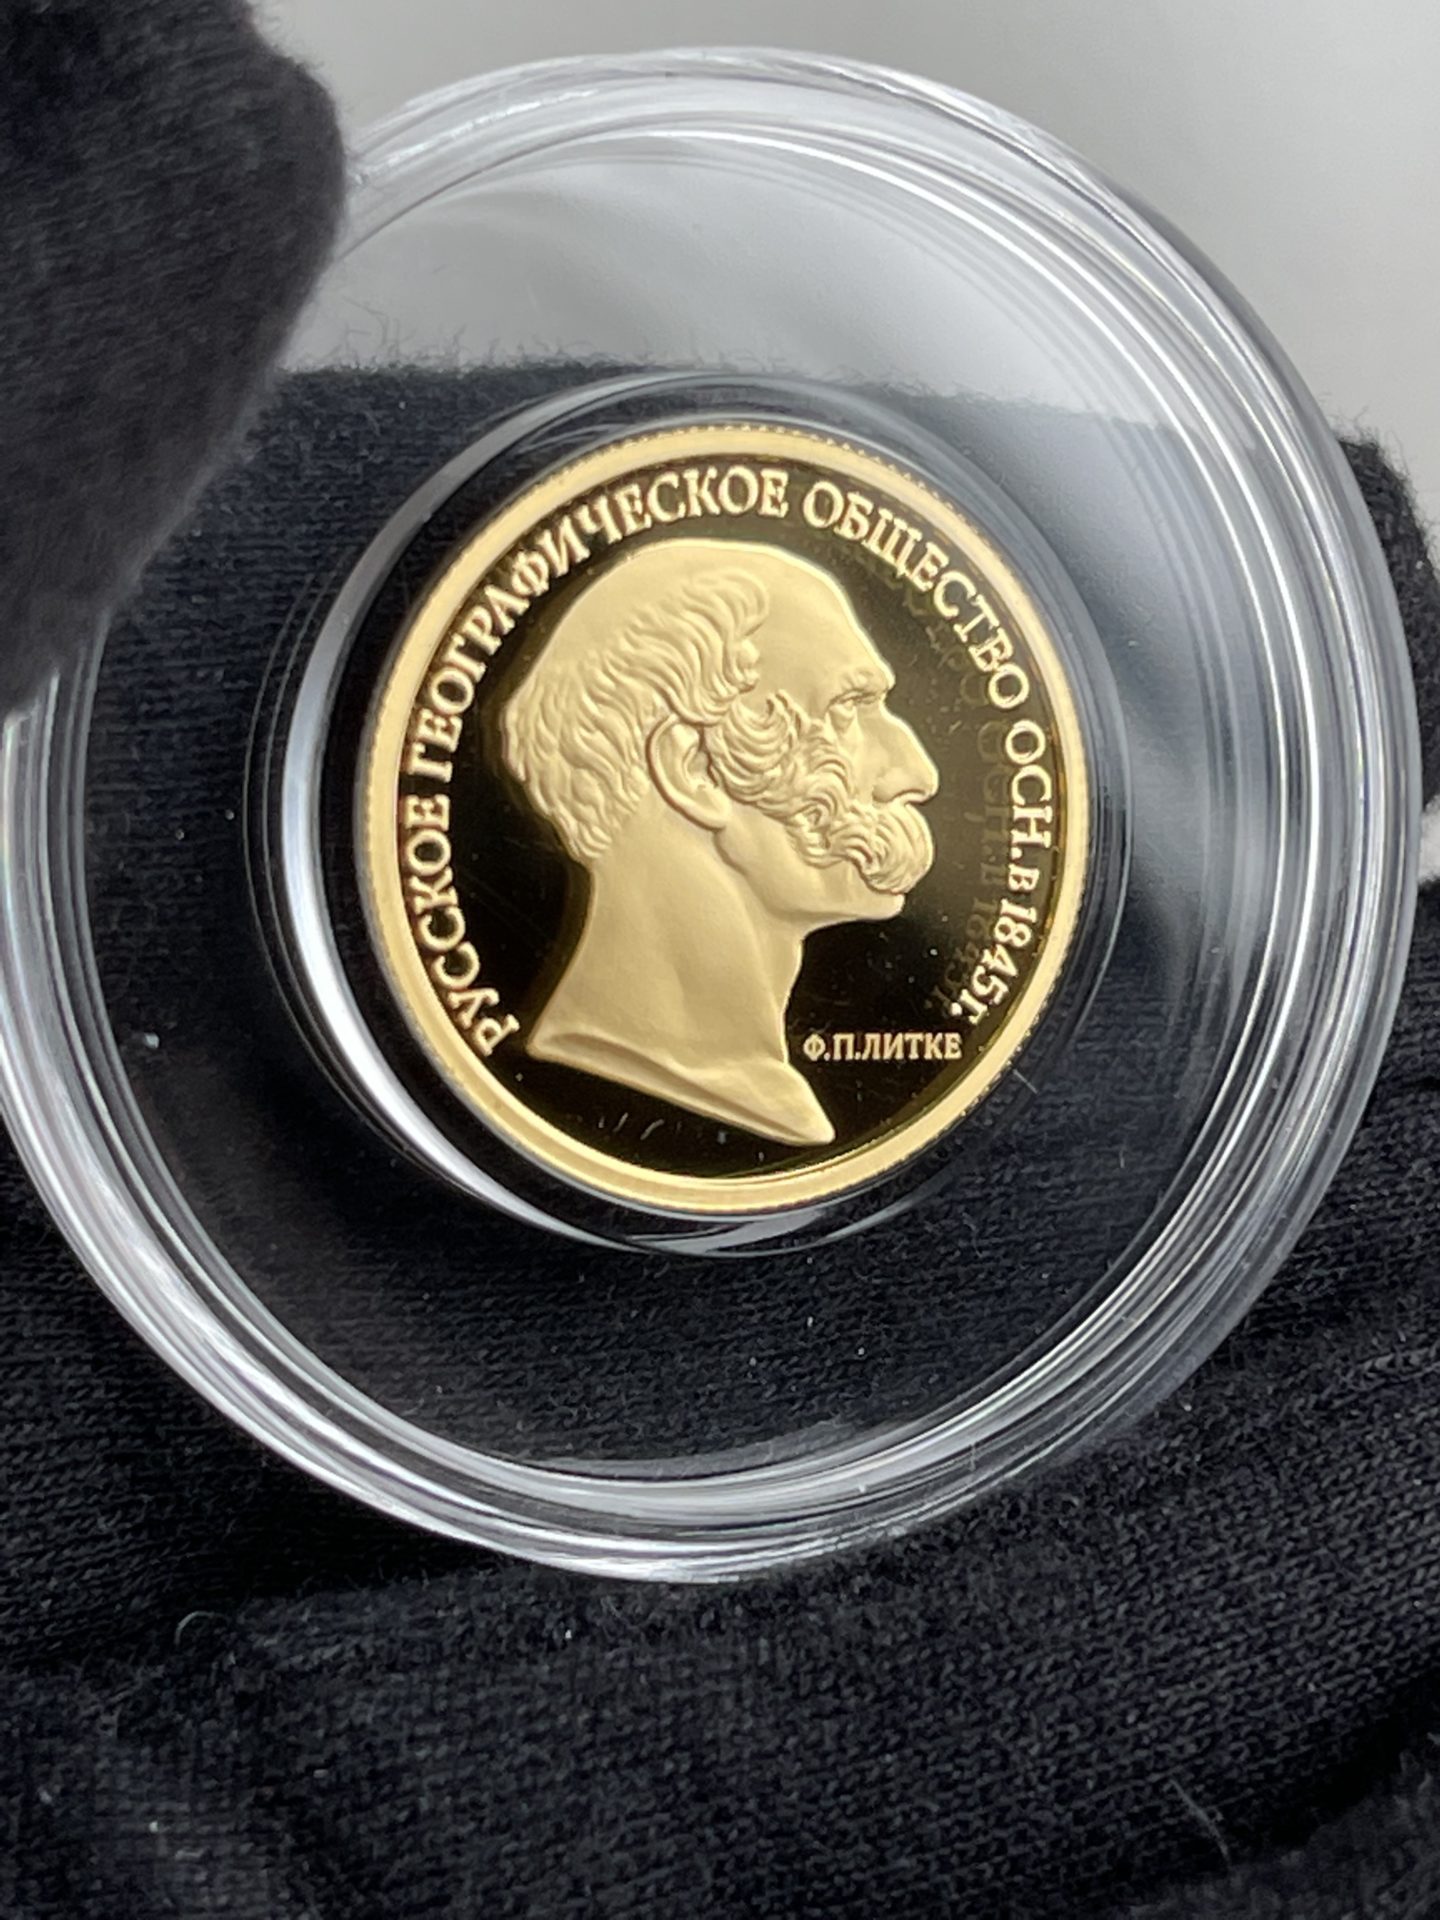 Moneda de oro de 50 rublos Sociedad Geográfica 2015